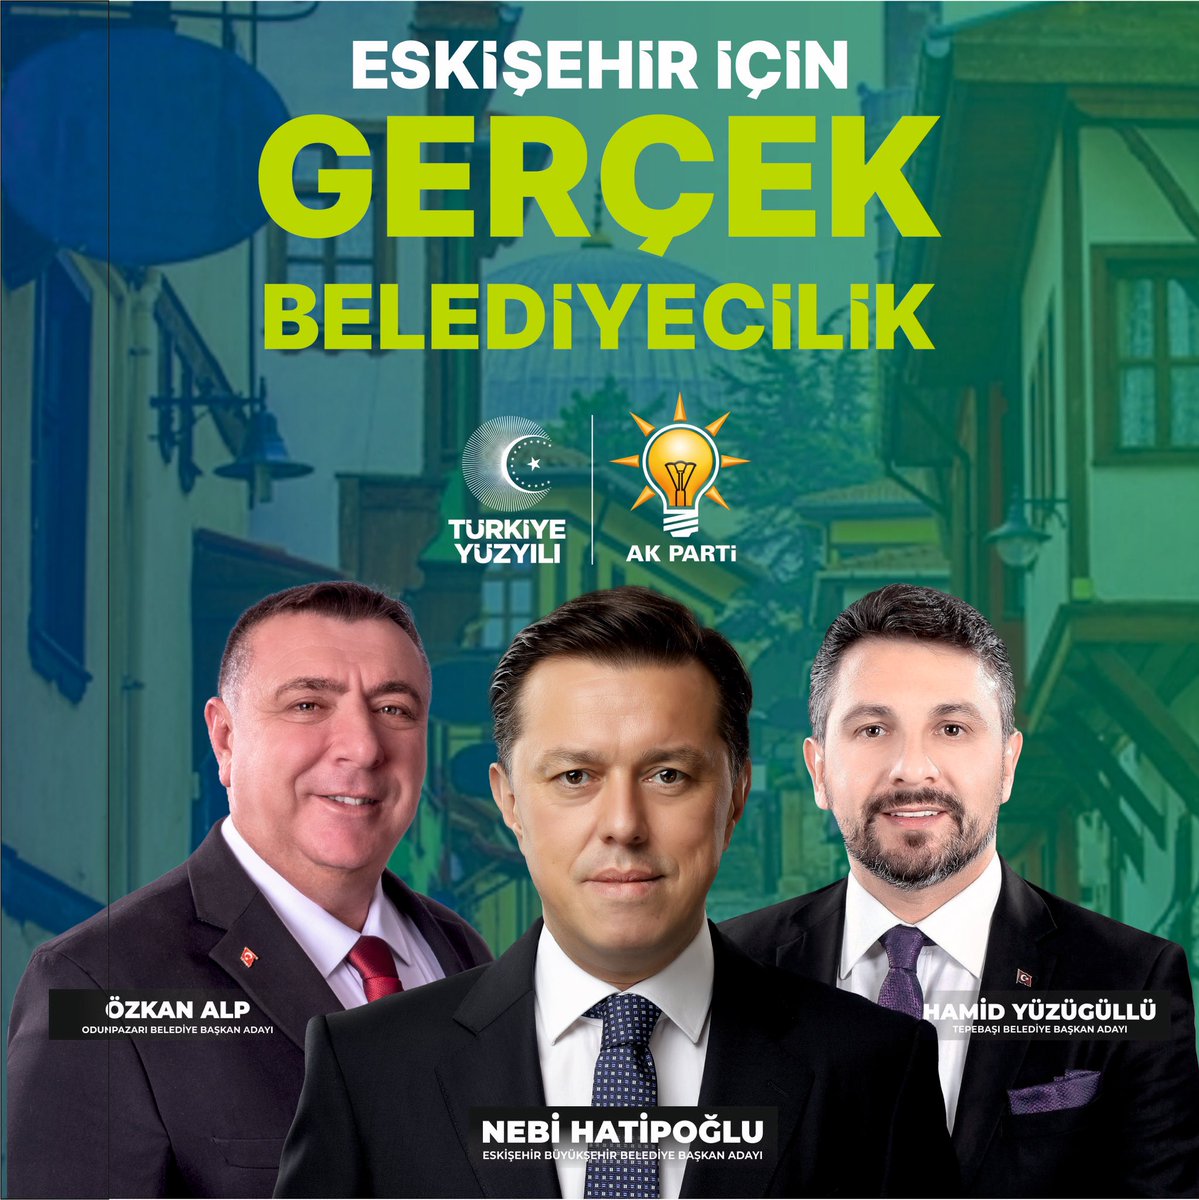 Eskişehir için; “Gerçek Belediyecilik” #BaşkanSahada #Eskişehir #Odunpazarı #Tepebaşı #AKPARTİ